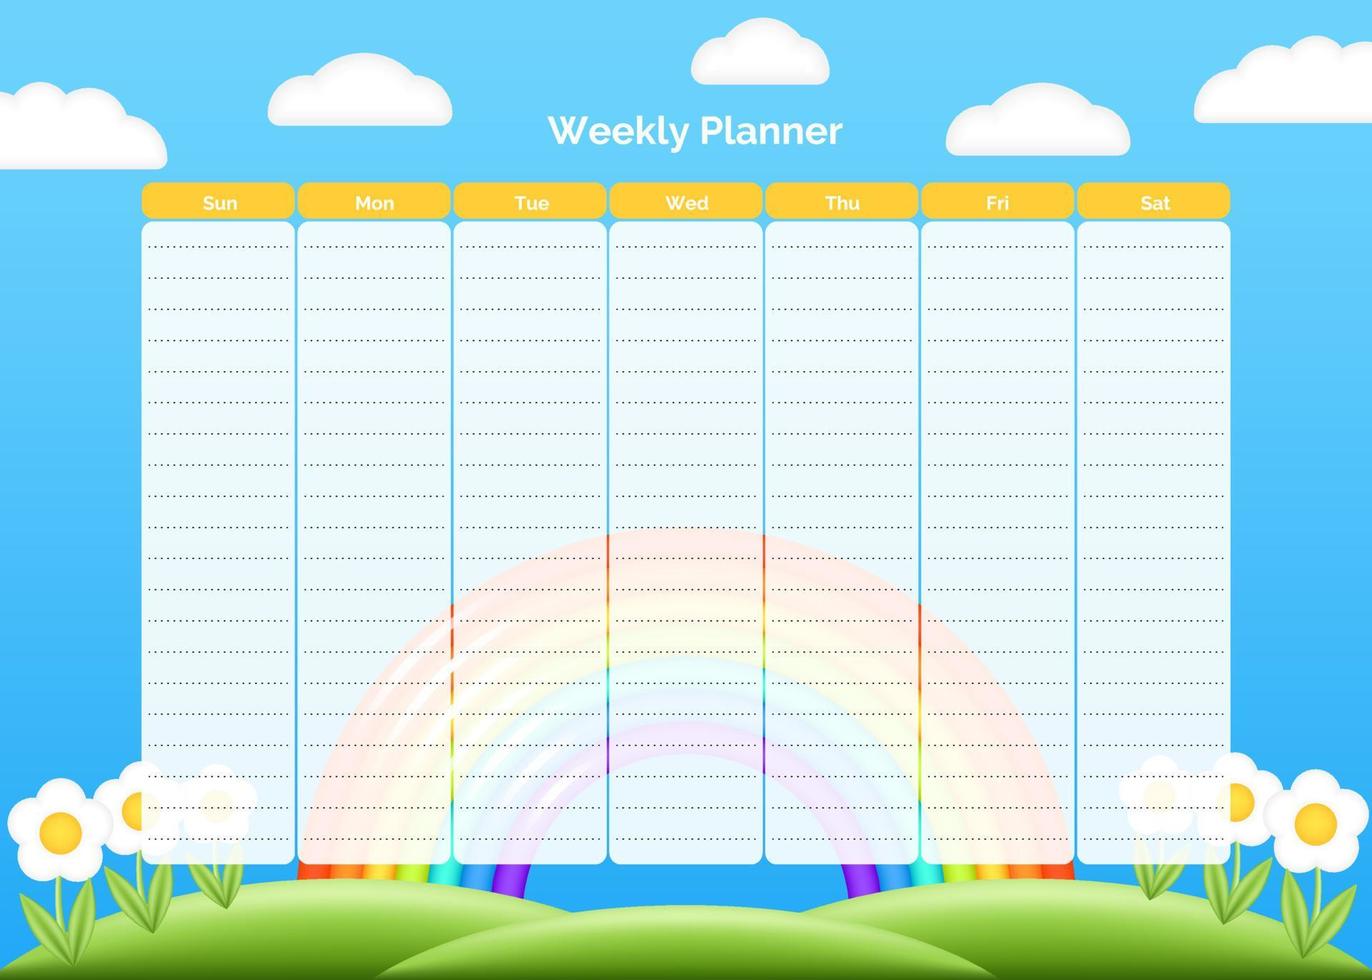 Vektor Wochenplaner Entwurfsvorlage. Eleganter niedlicher blauer Frühlingskinderorganisator und -notizblock. Wochenkalender Zeitplan druckbare Aufgabenliste. Schöne 3D-Wolken im blauen Himmel mit realistischem 3D-Regenbogen.